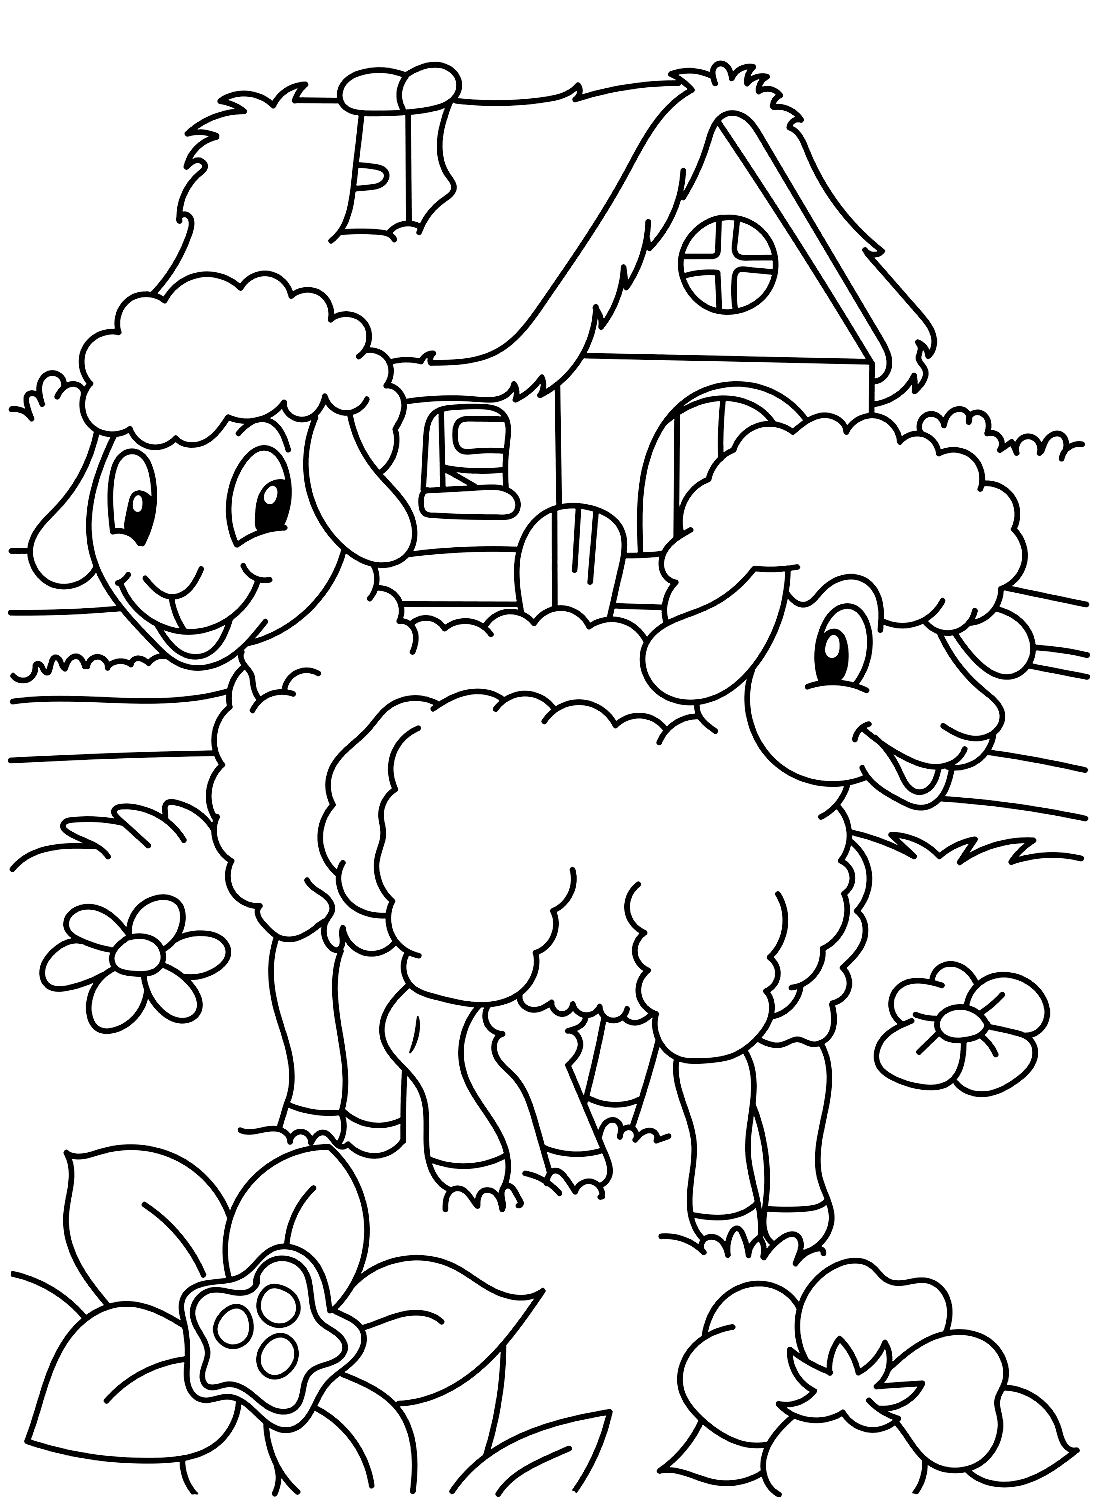 La belle page couleur Sheepe de Sheep